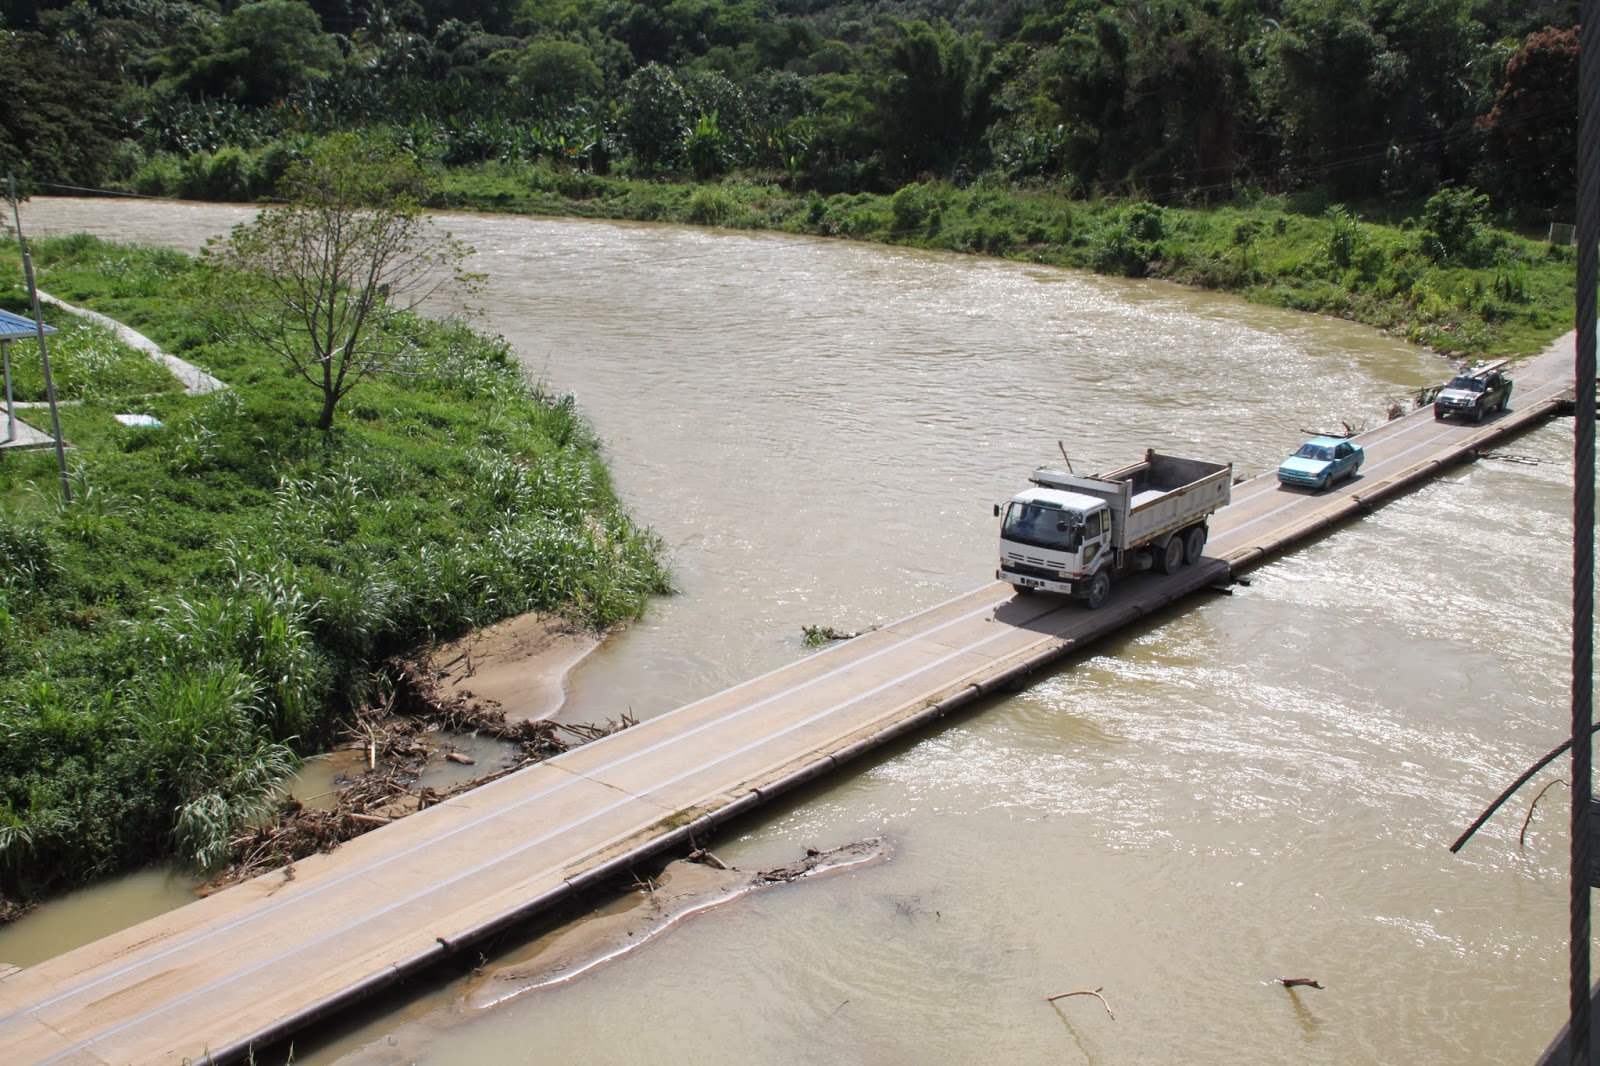 Ini cerita kita: Sabah Road Trip - Day 2 - Jambatan 